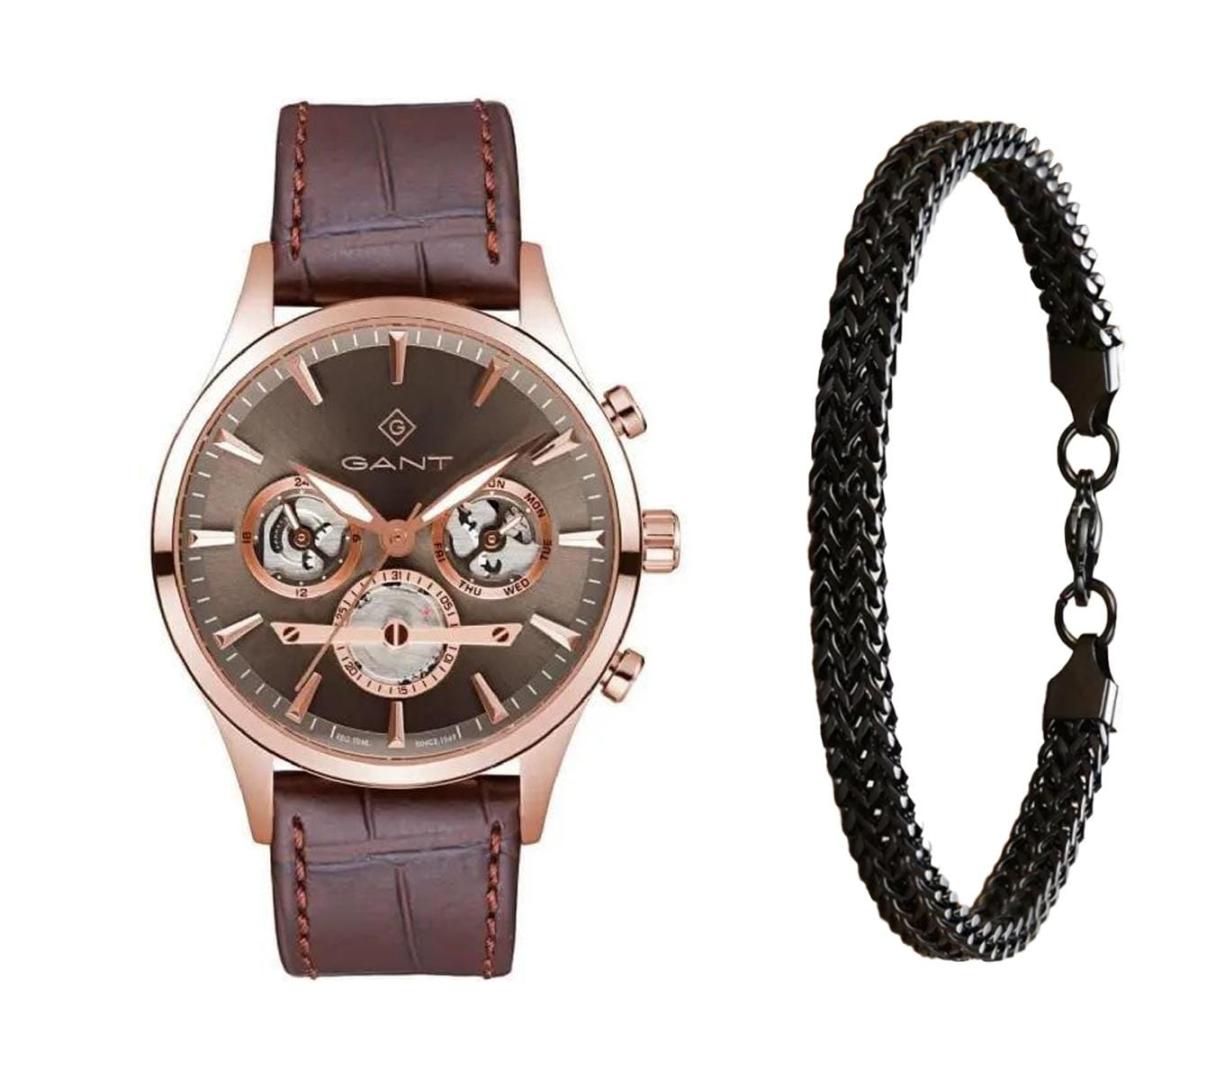 שעון יד אנלוגי לגבר gant gt131012 גאנט עם צמיד חוליות שחור